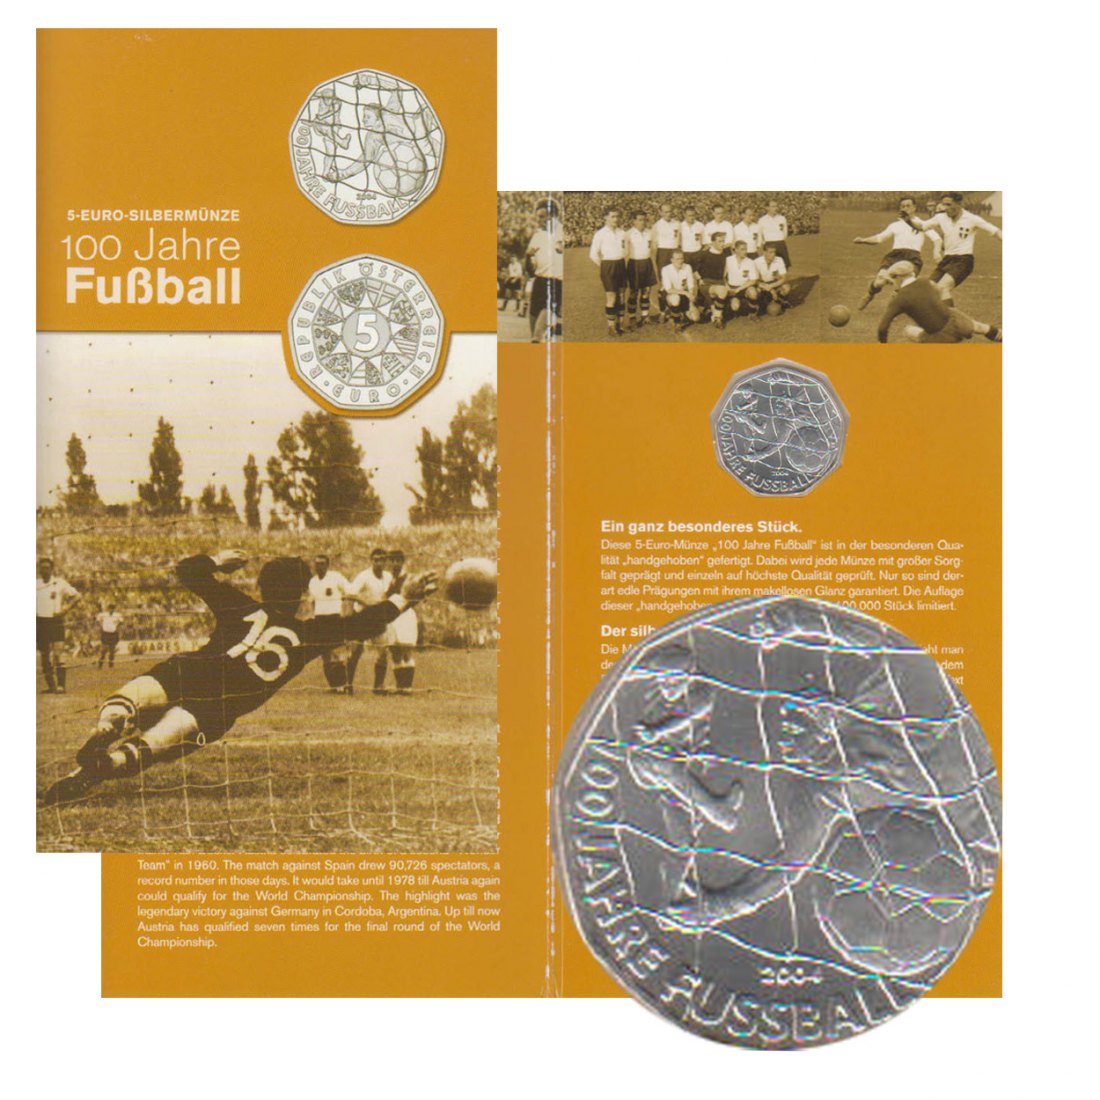  Offiz 5-Euro-Silbermünze Österreich *100 Jahre Fußball* 2004 *hgh*   